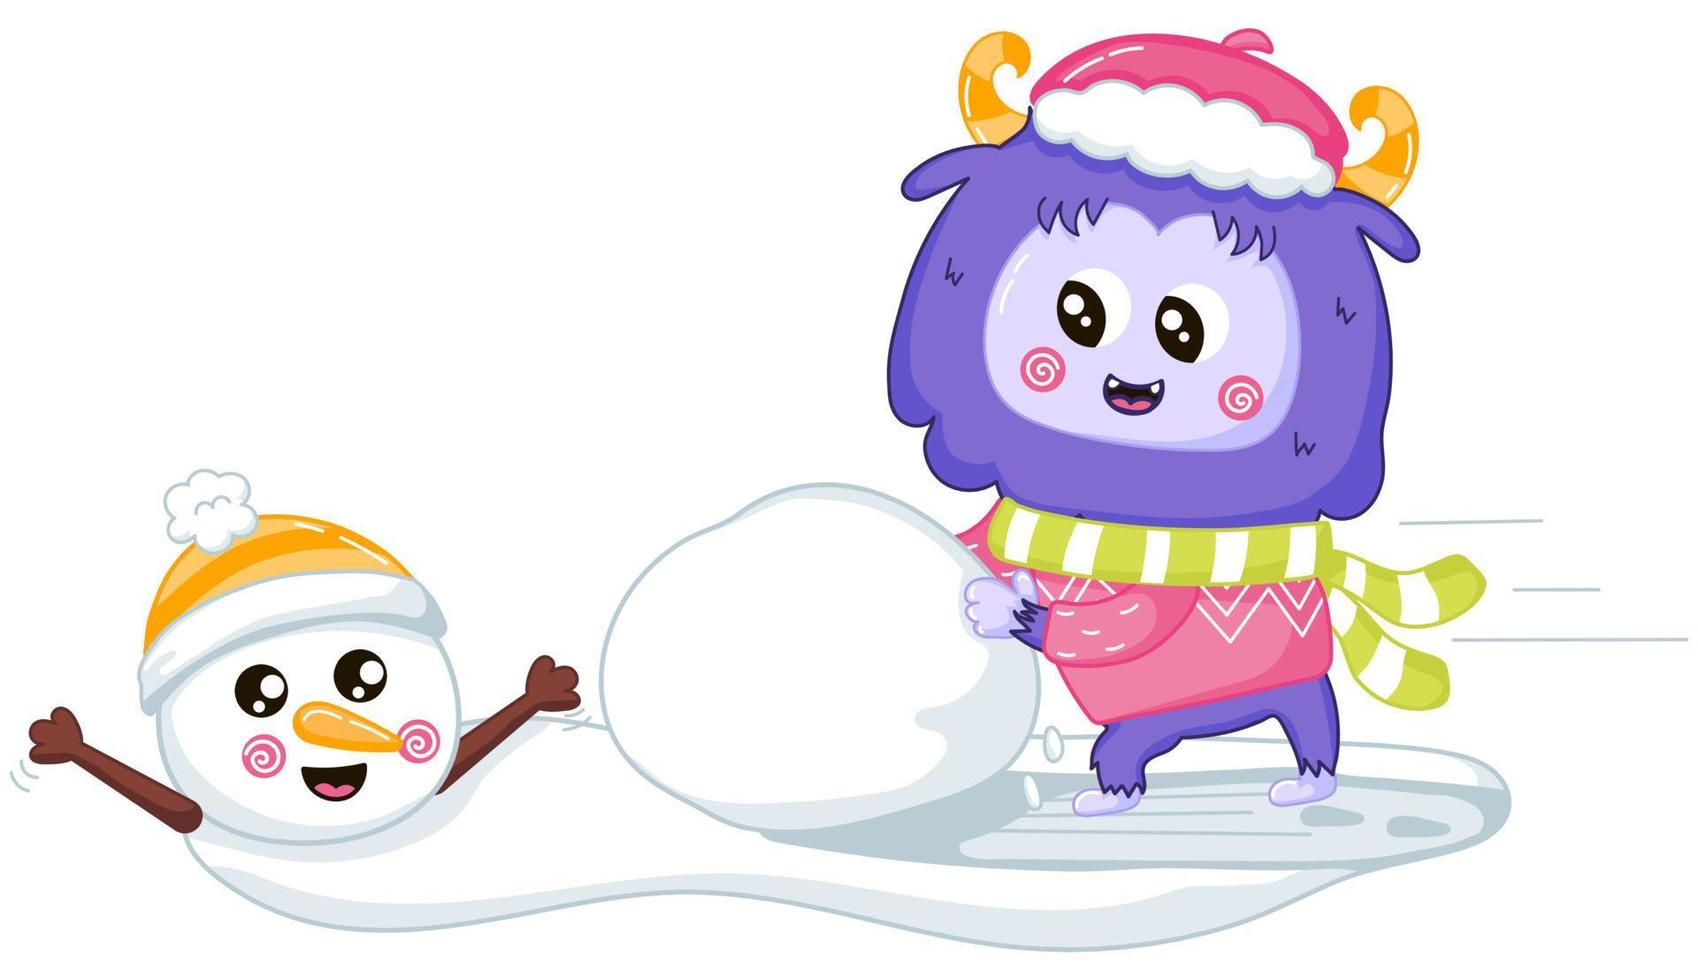 grappig yeti mascotte karakter spelen en maken sneeuwman vriend vector